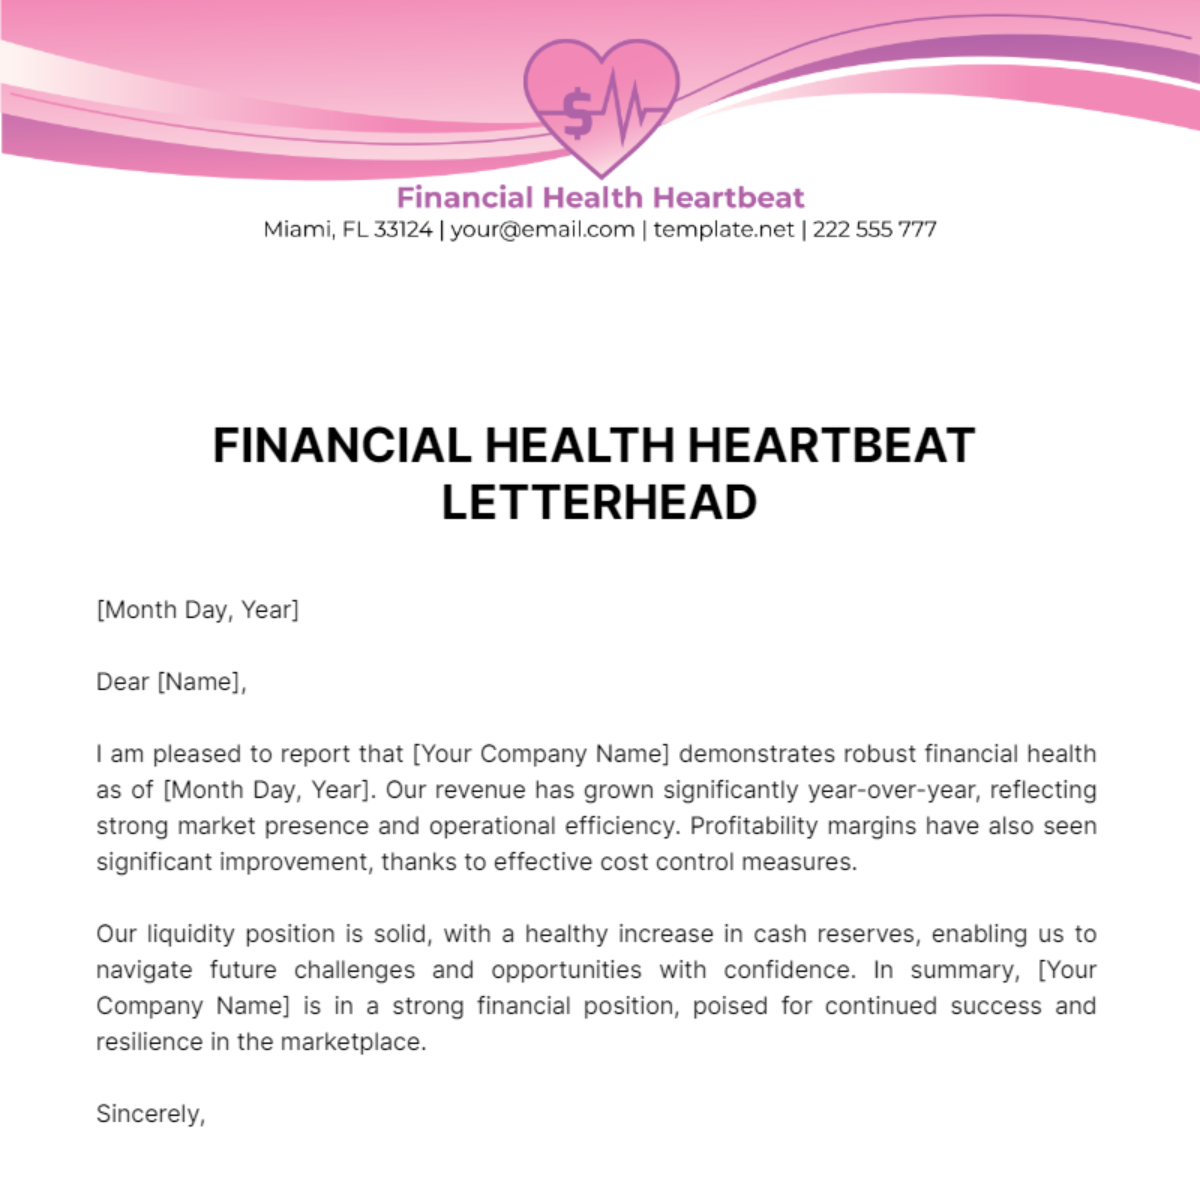 Free Financial Health Heartbeat Letterhead Template